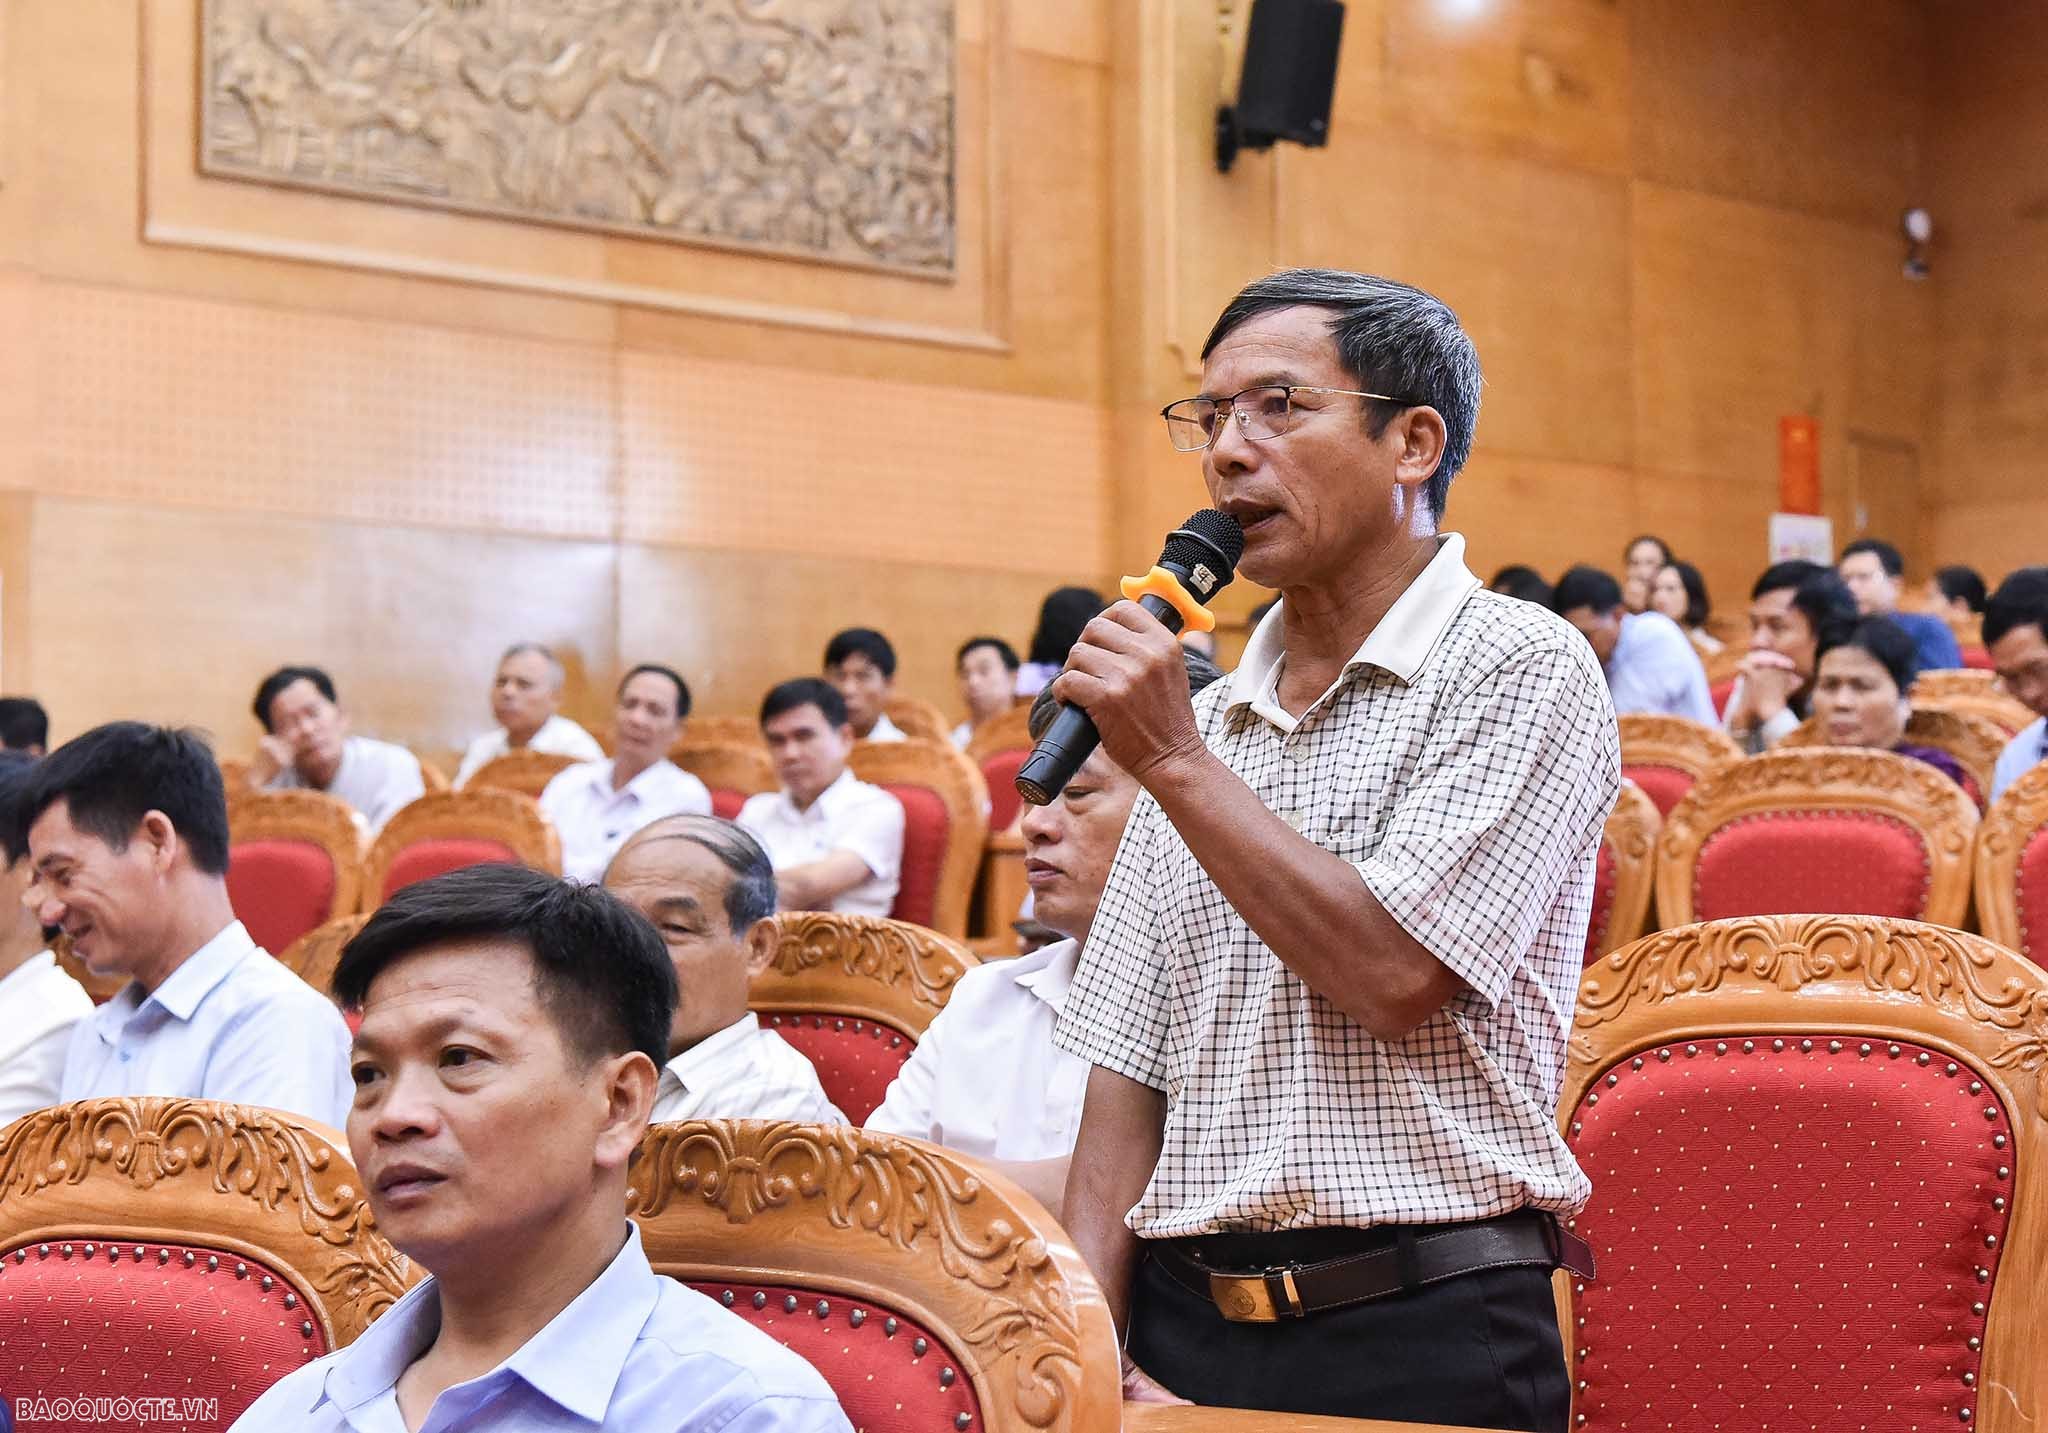 Bộ trưởng Ngoại giao Bùi Thanh Sơn tiếp xúc cử tri tại huyện Vĩnh Tường, Vĩnh Phúc